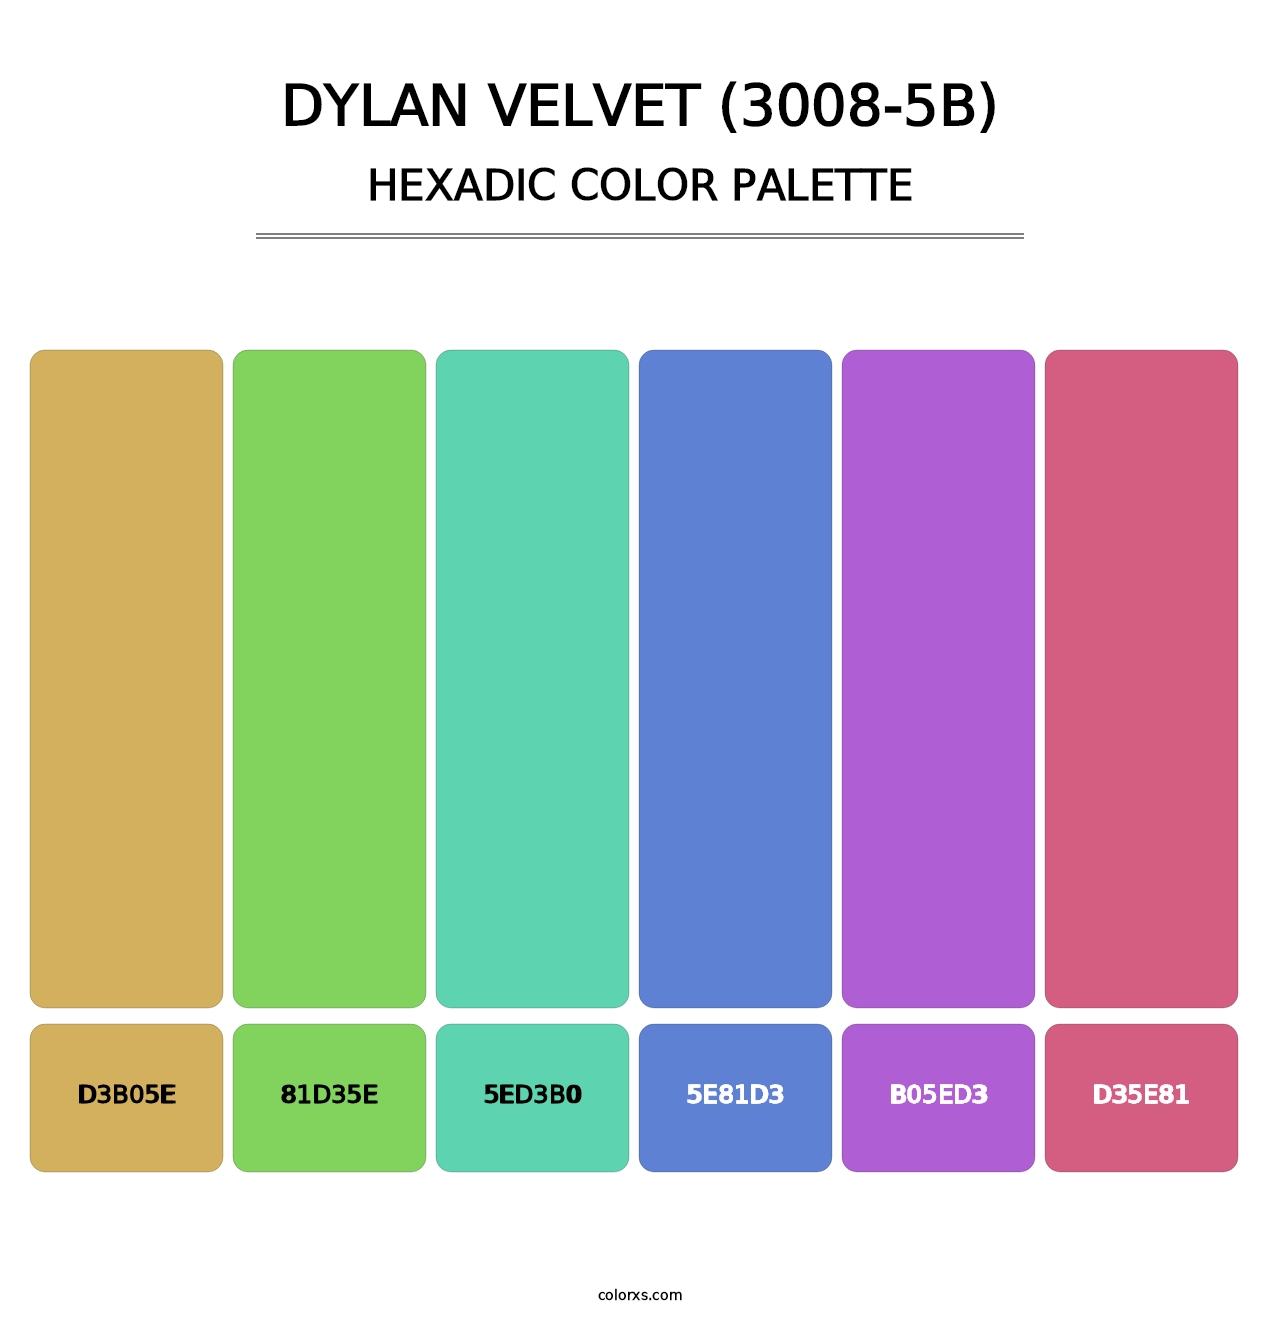 Dylan Velvet (3008-5B) - Hexadic Color Palette